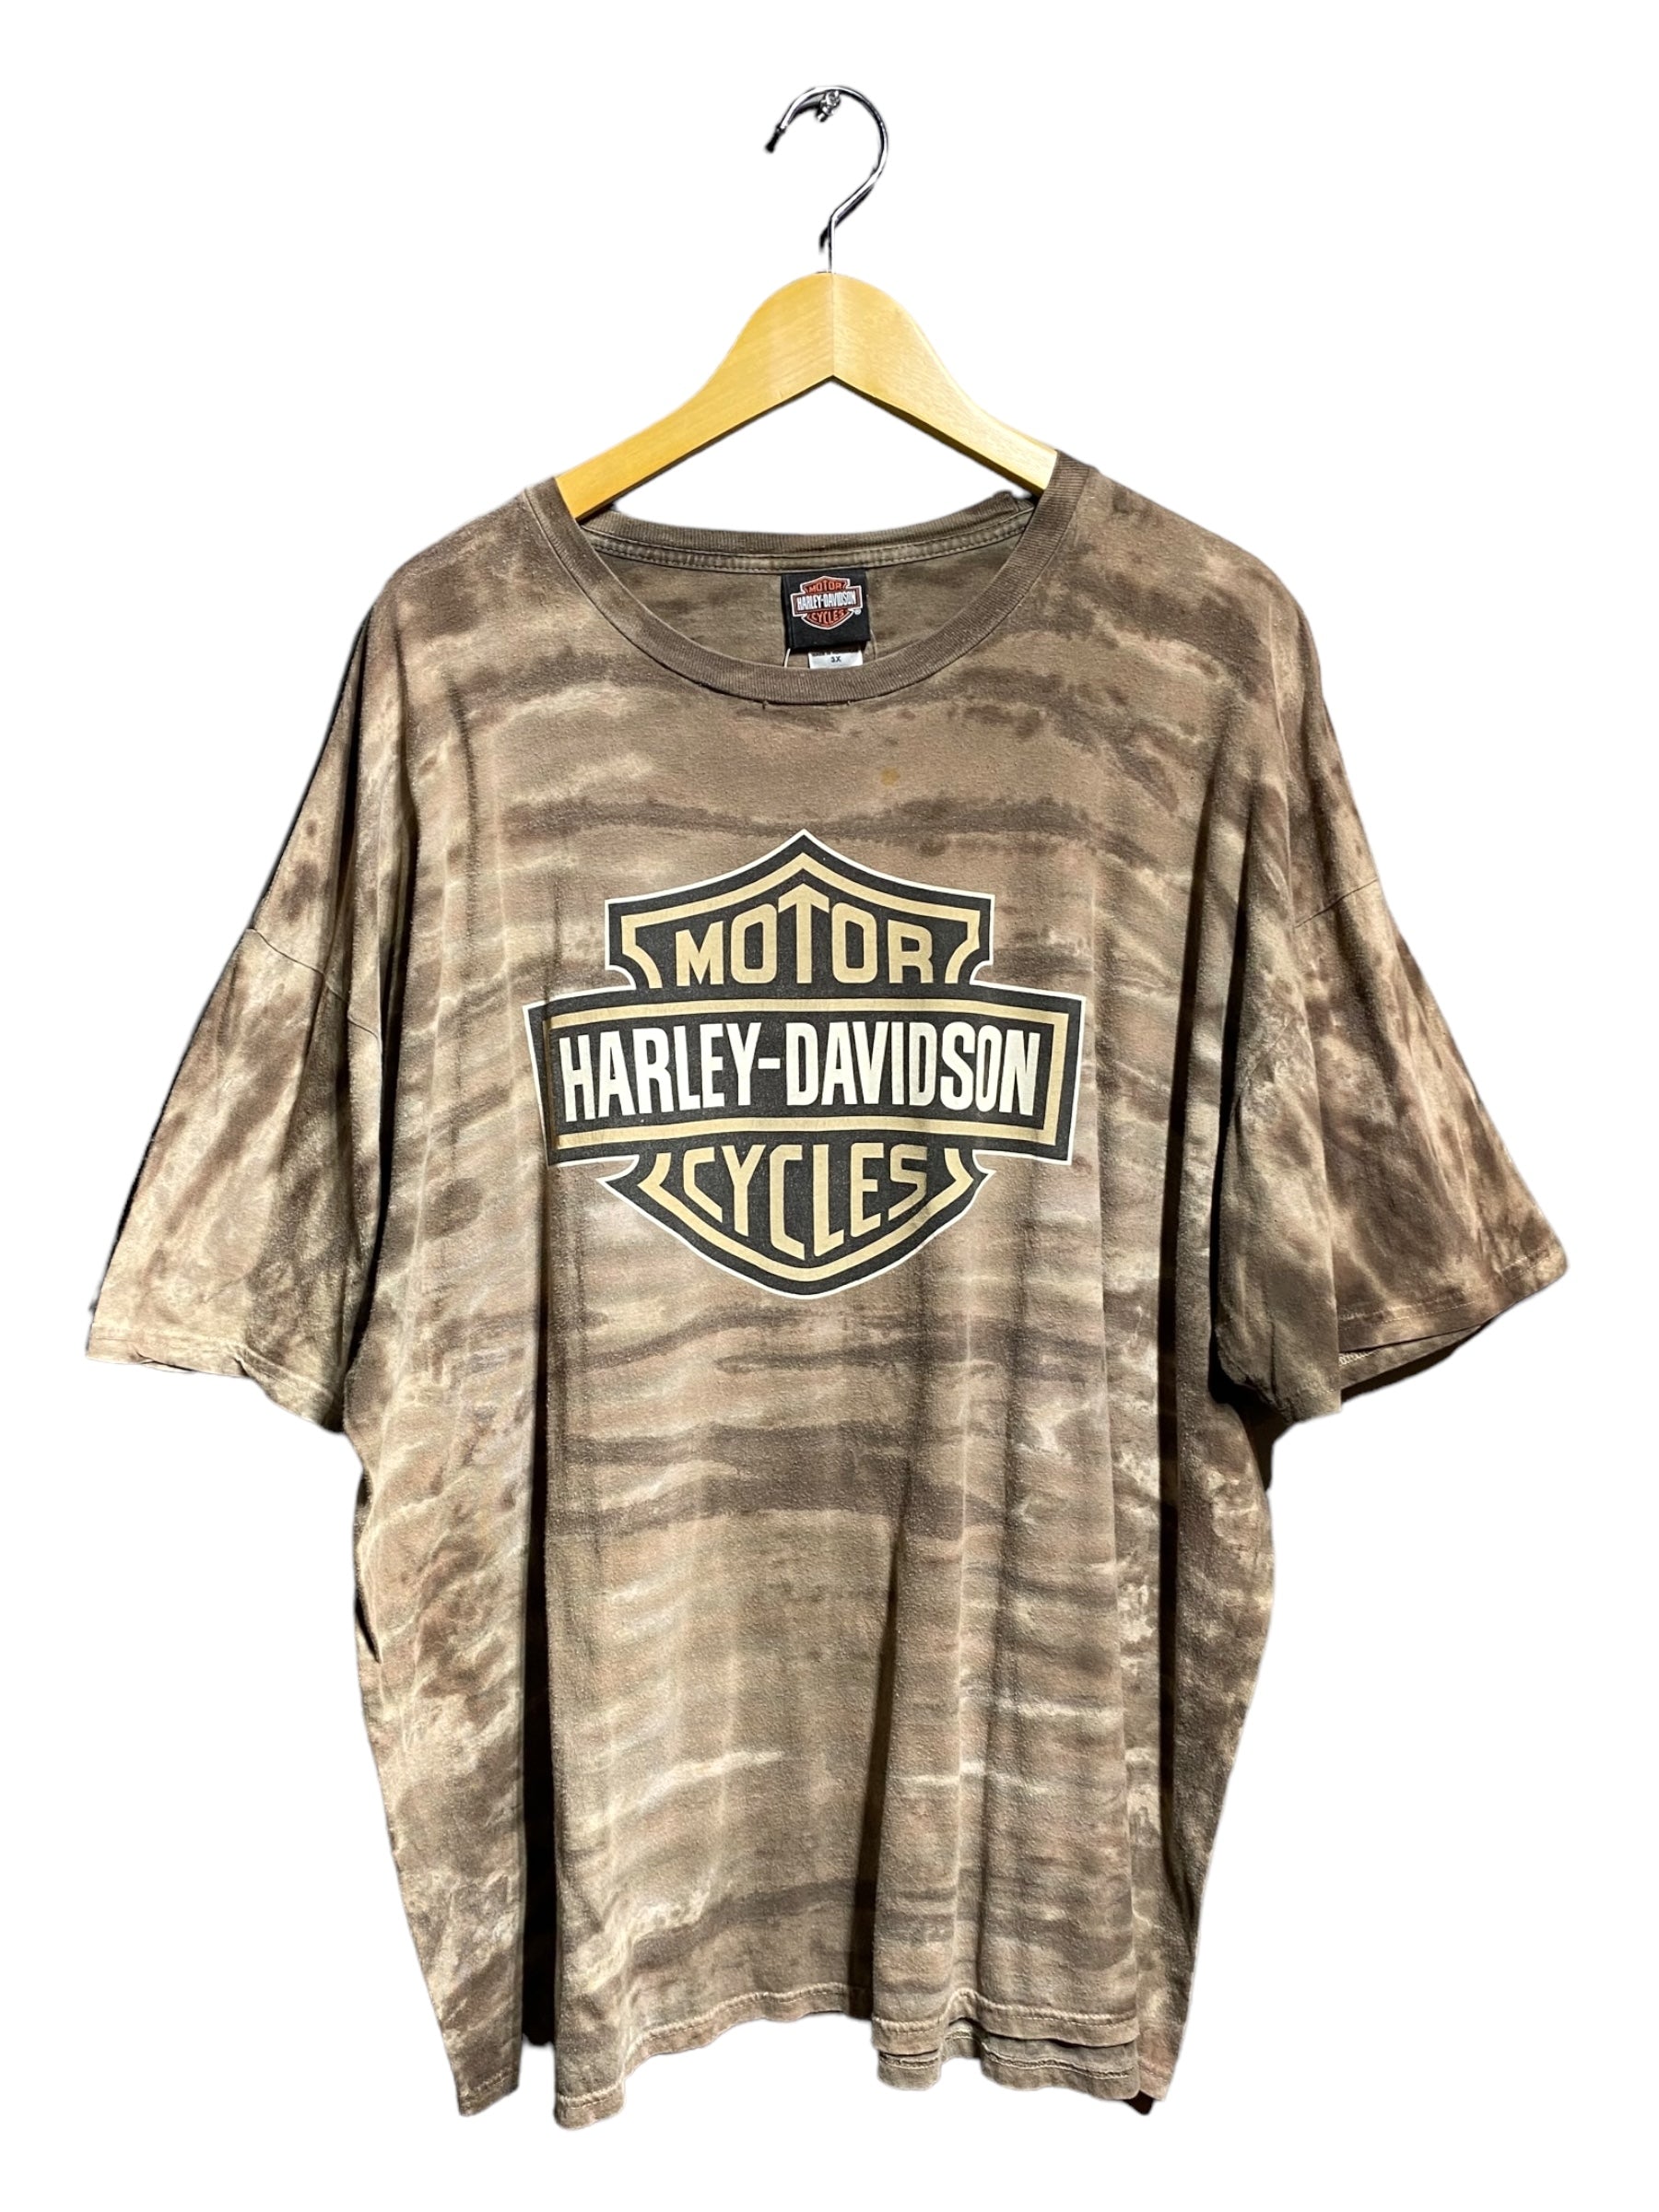 HARLEY DAVIDSON ハーレーダビッドソン ハーレー 半袖 Tシャツ